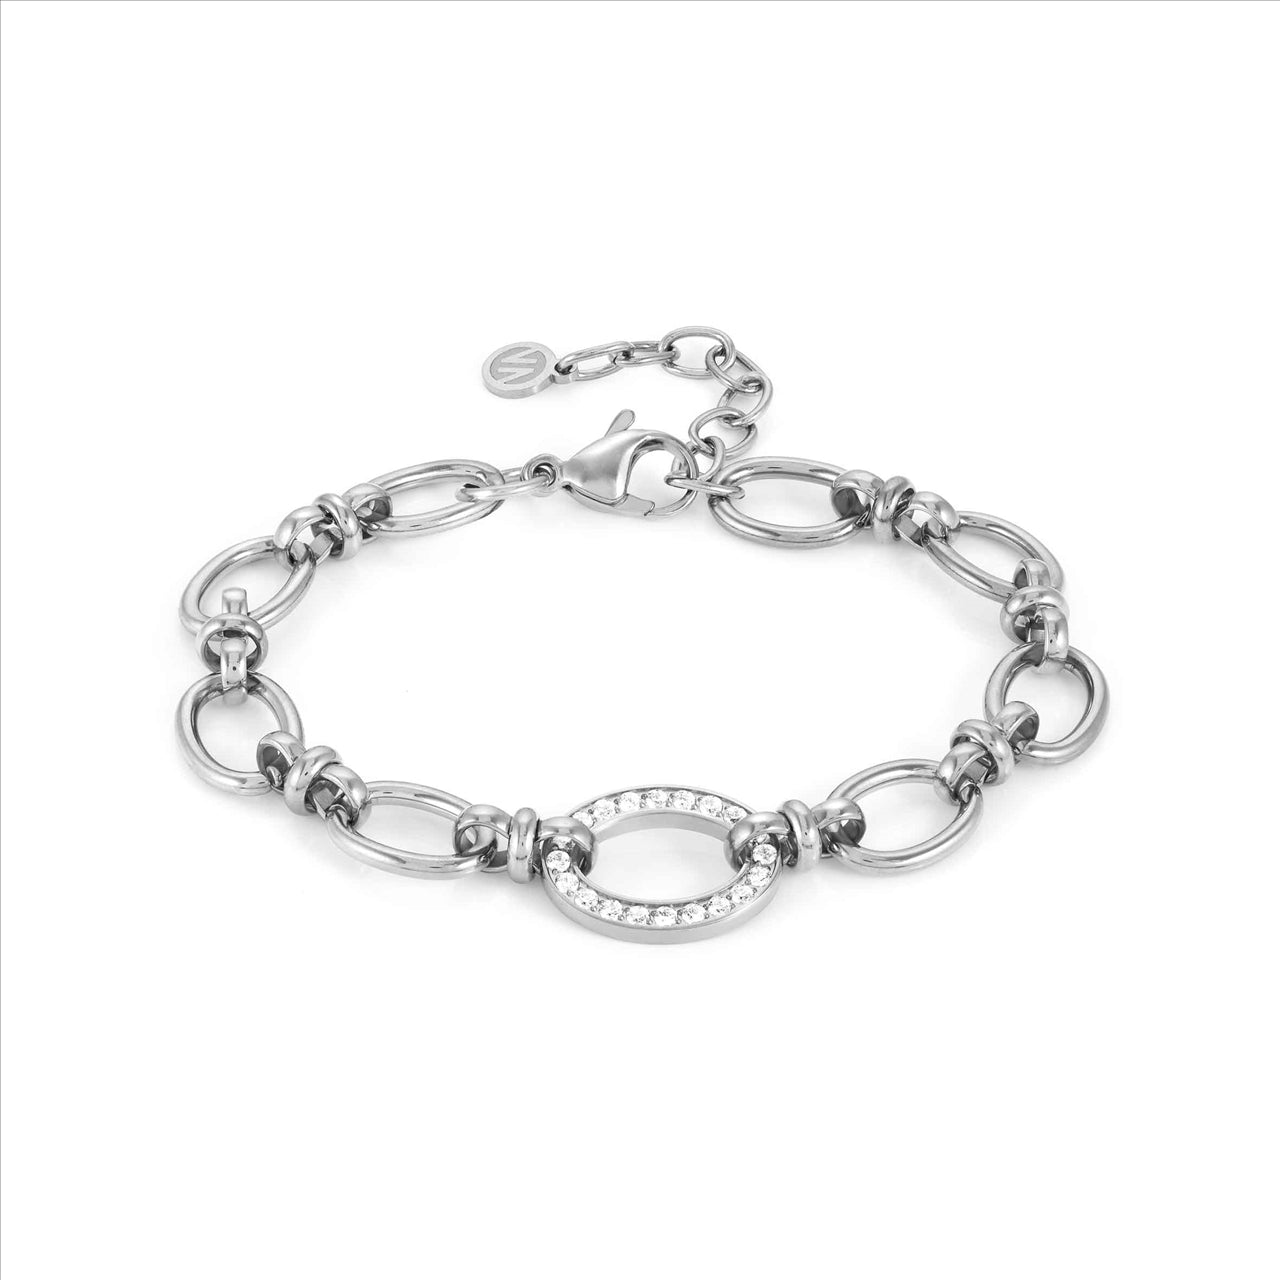 Affinity Chain Bracelet - with CZ